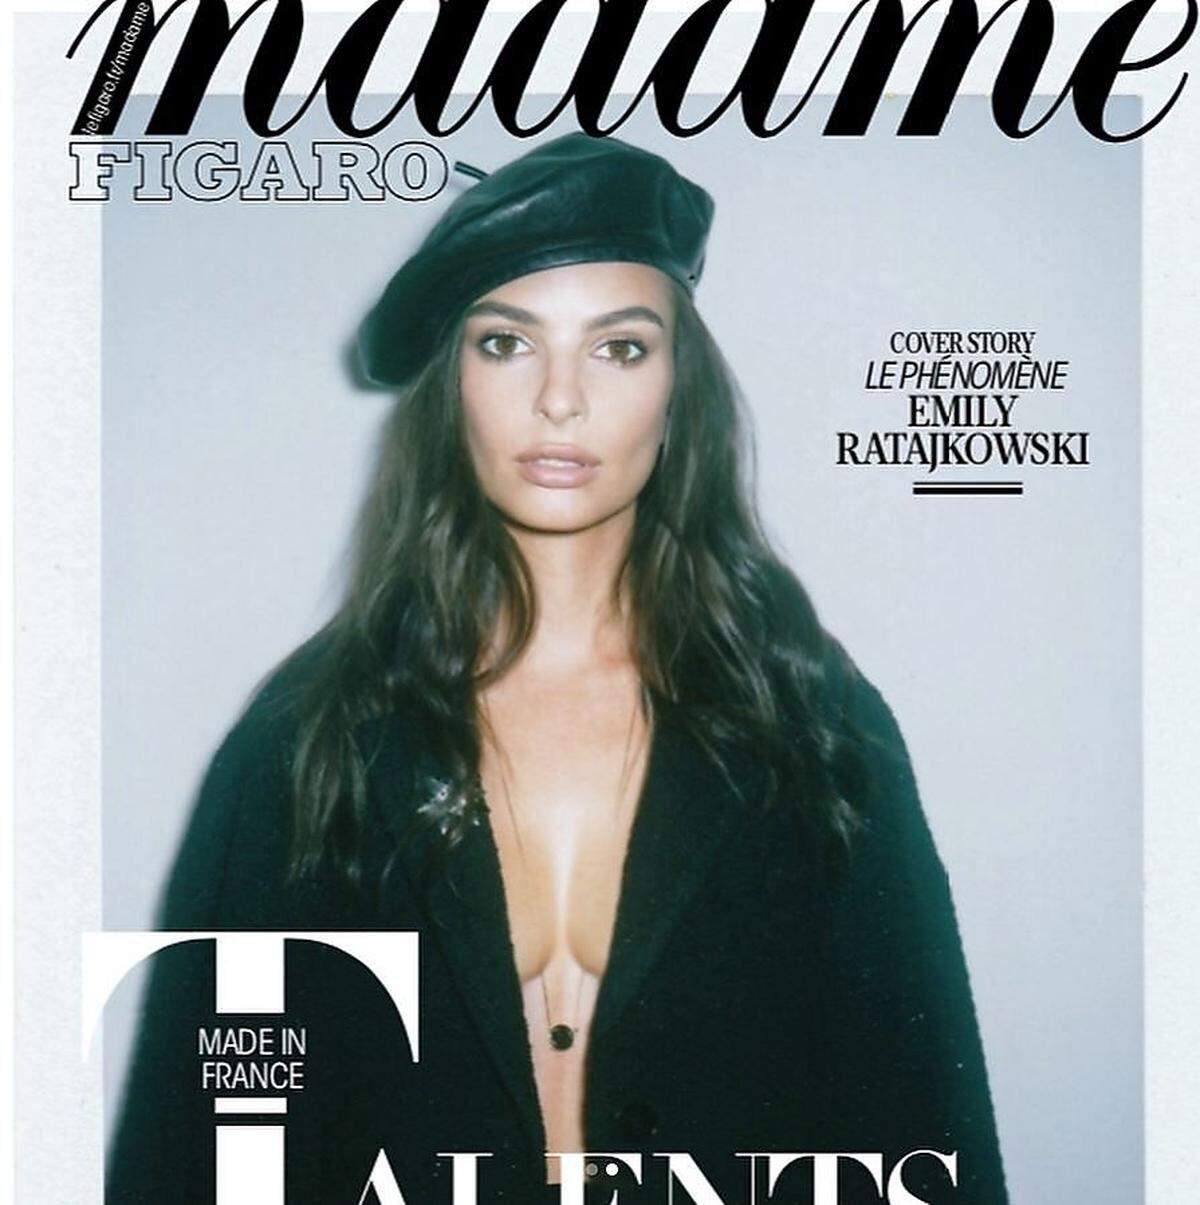 Emily Ratajkowski war Covermodell für "Madame Figaro", einer Beilage der französischen Tageszeitung "Figaro". Und dem US-Model fiel schnell auf, dass auf dem abgedruckten Foto von ihm einiges nicht stimmte.